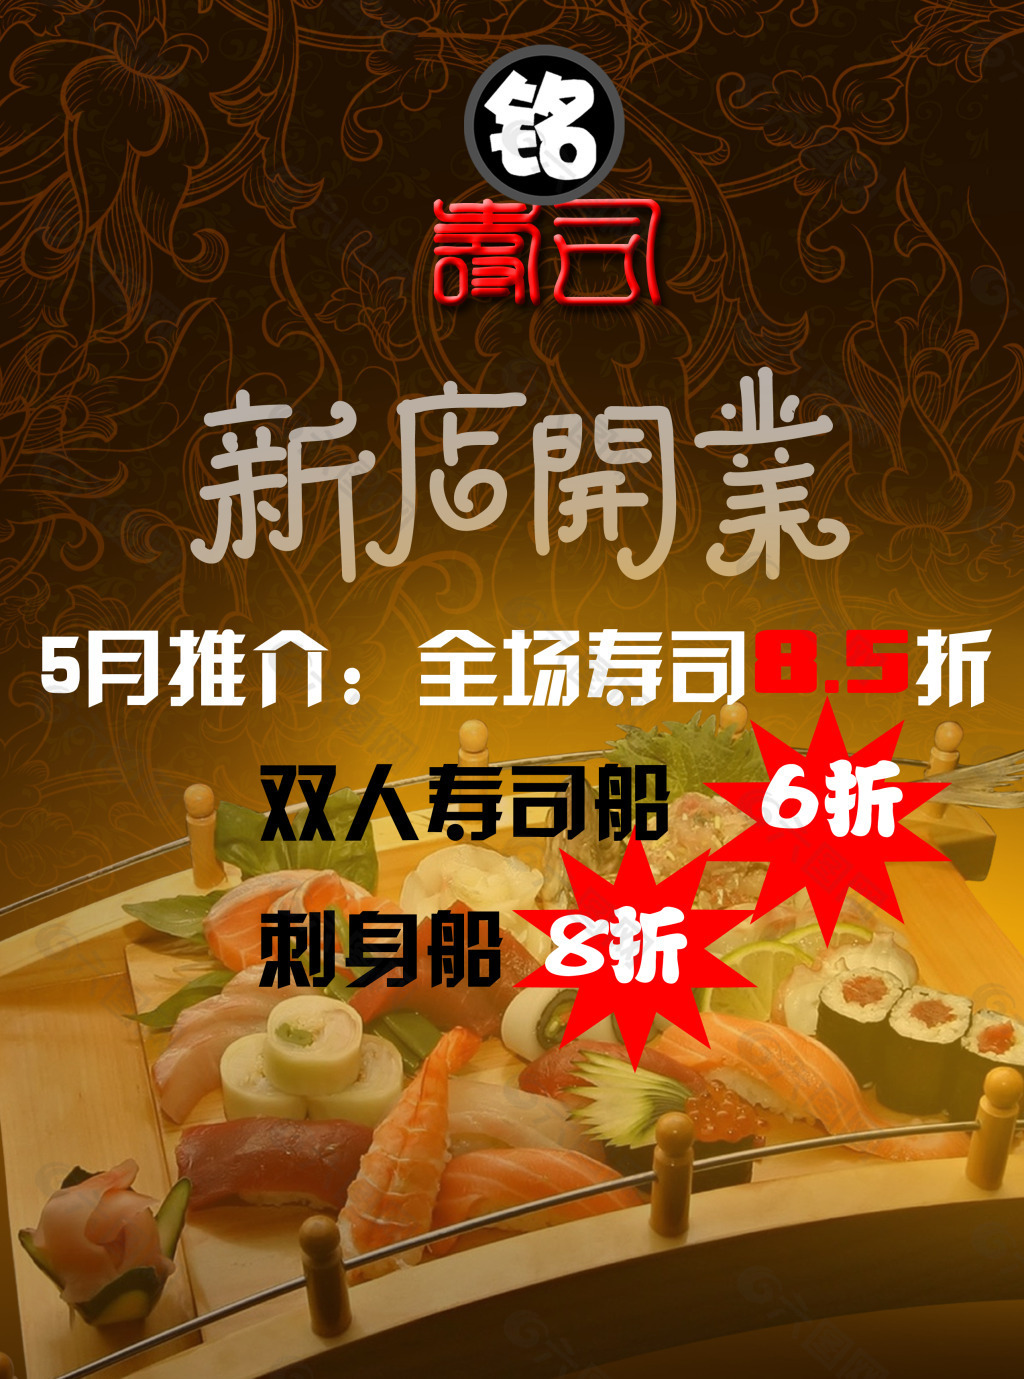 寿司开业图片 寿司开业素材 寿司开业模板免费下载 六图网